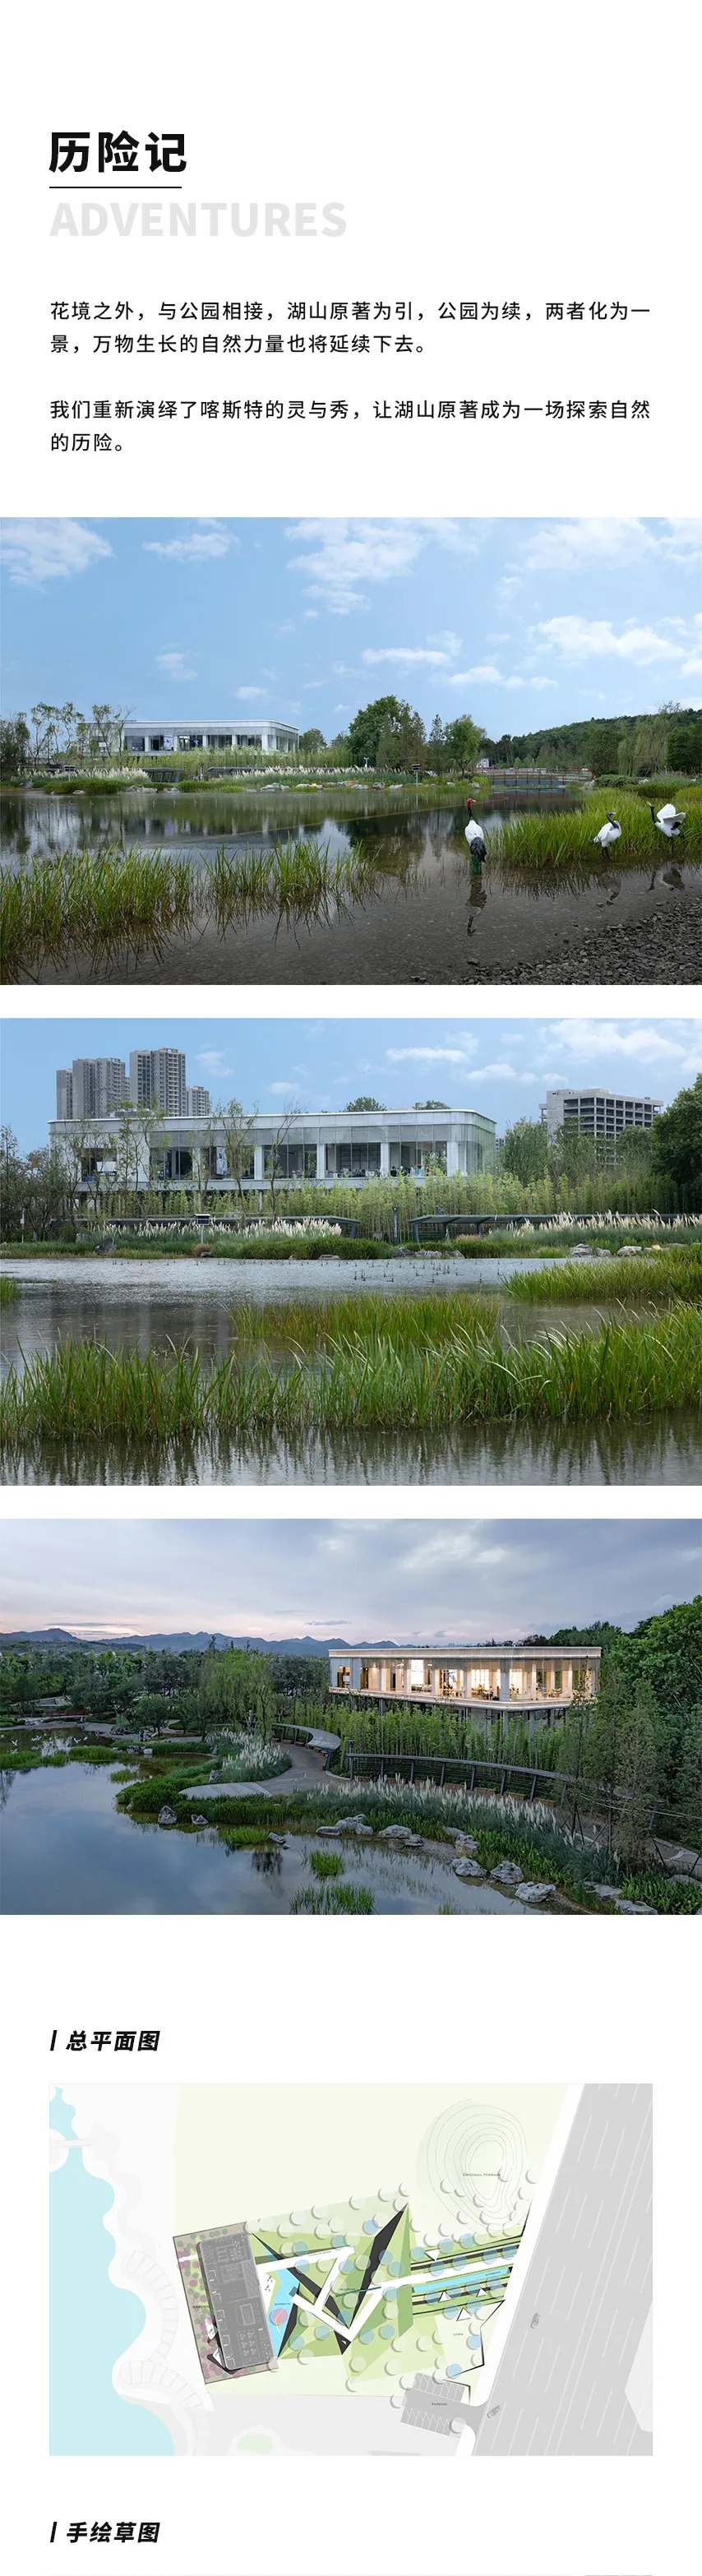 贵阳 龙湖·湖山原著 景观设计  /   犁墨景观